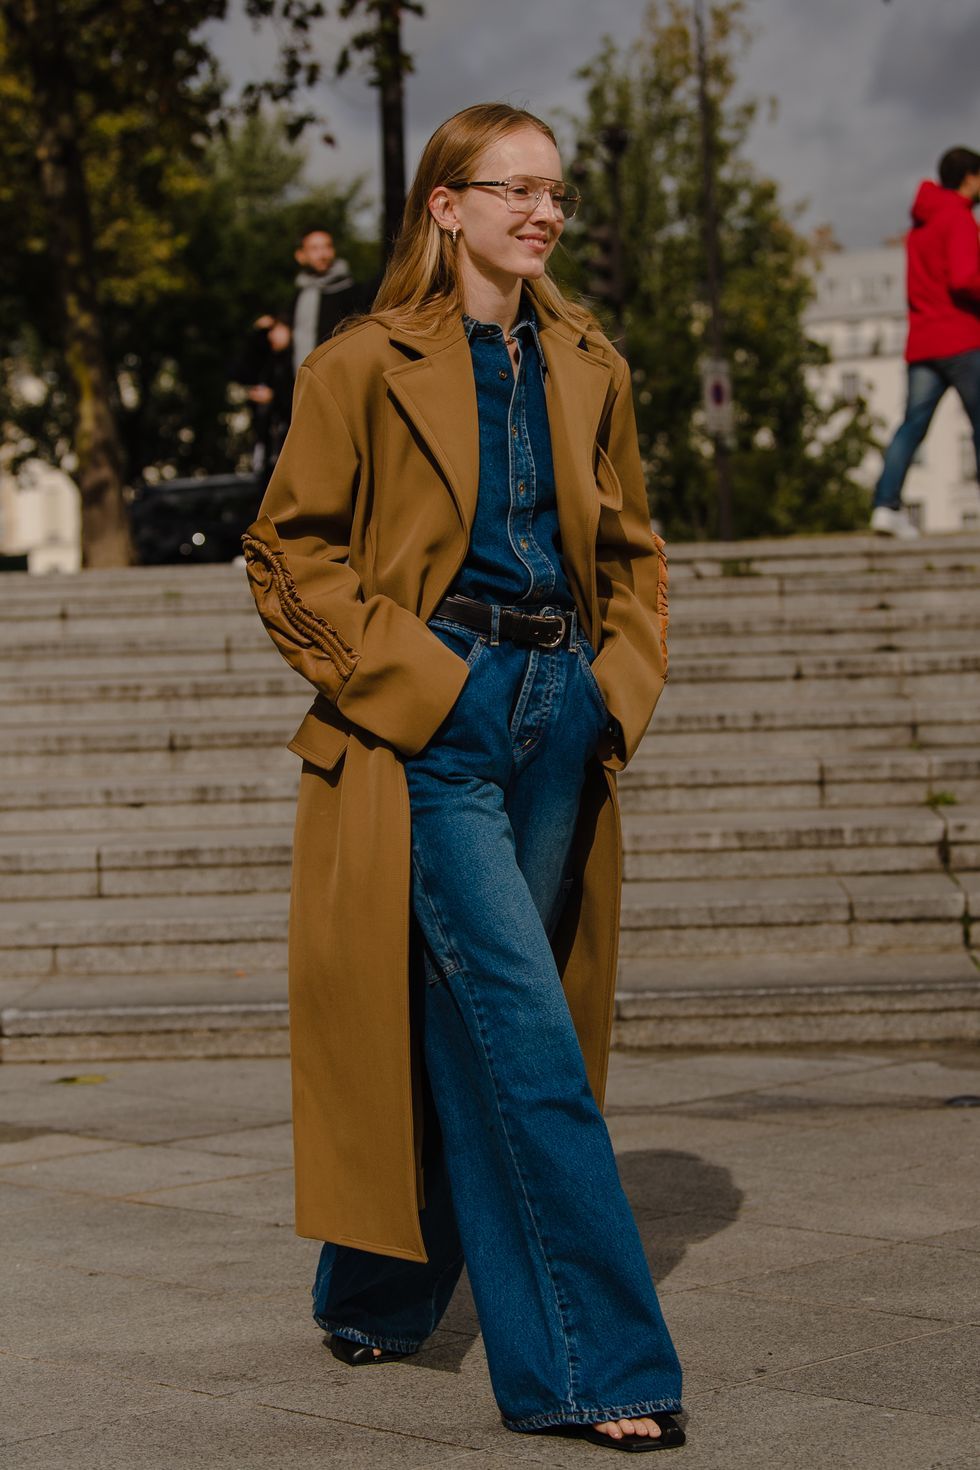 Як носити широкі трендові джинси і виглядати жіночно: дві головні особливості